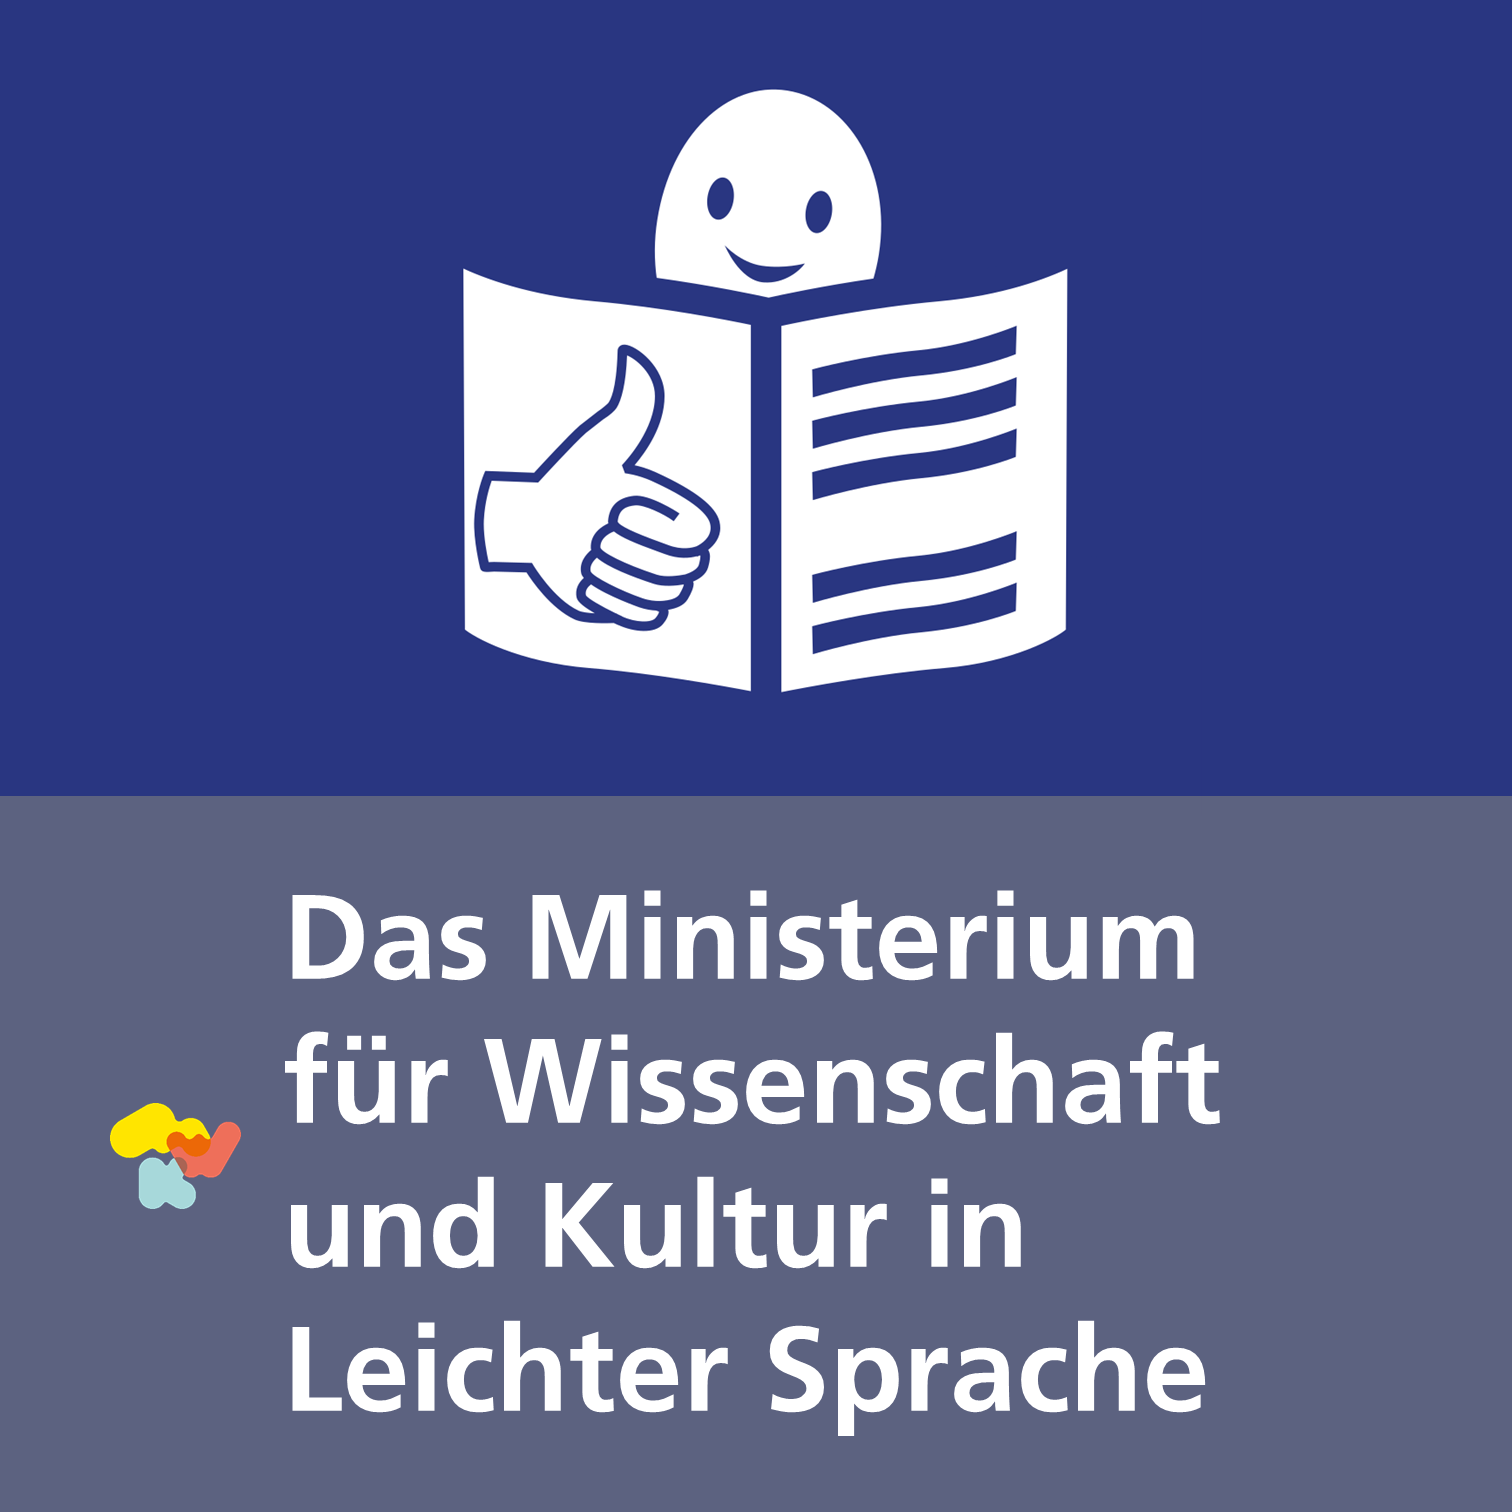 Schmuckbild: MWK in Leichter Sprache (Bildrechte Signet: © European Easy-to-Read Logo: Easy to Read. More information at www.easy-to-read.eu)